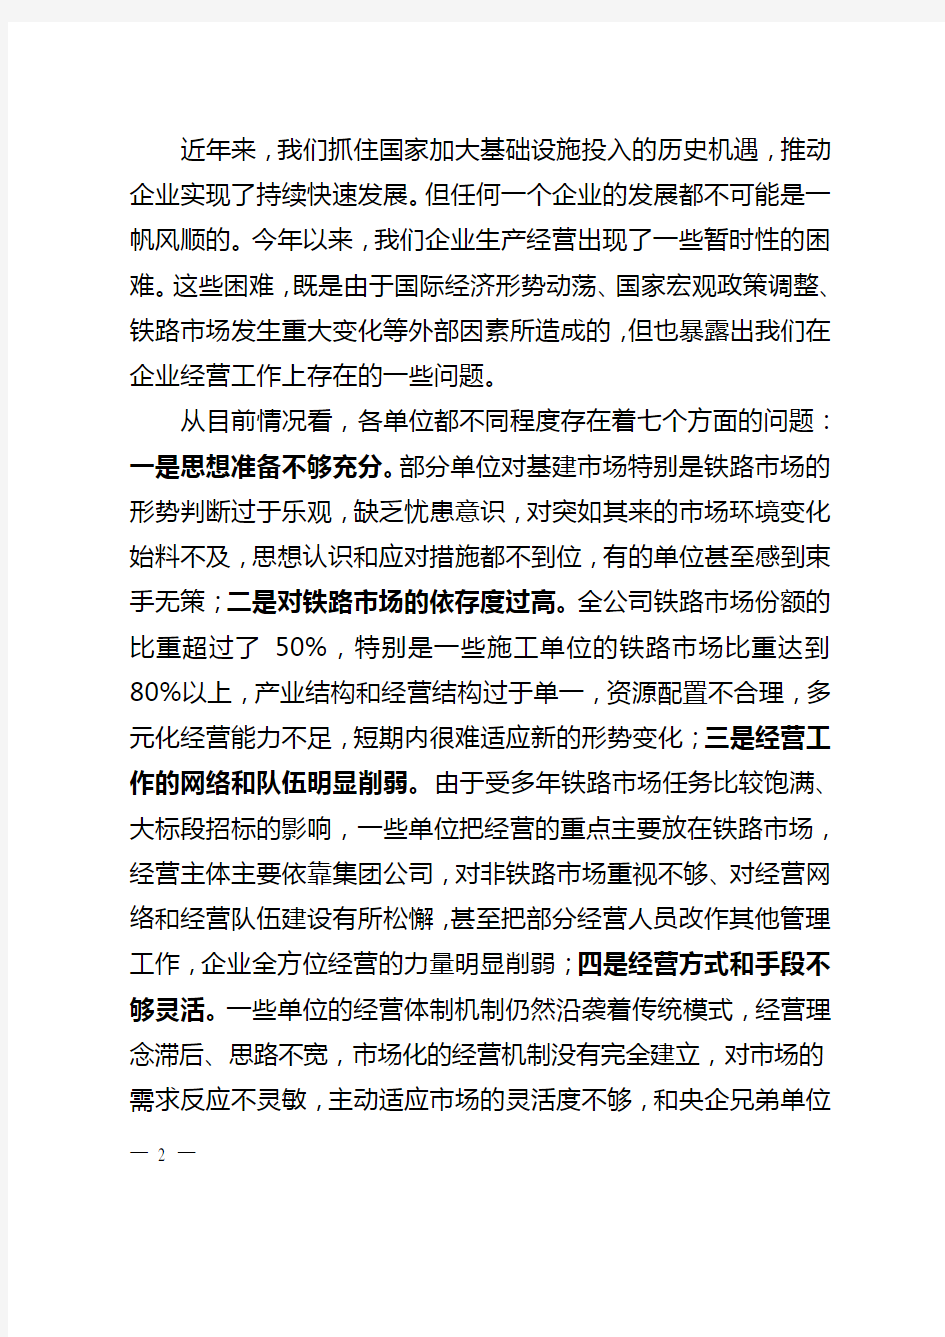 李长进董事长在中国中铁经营工作会议上的讲话(印刷稿)